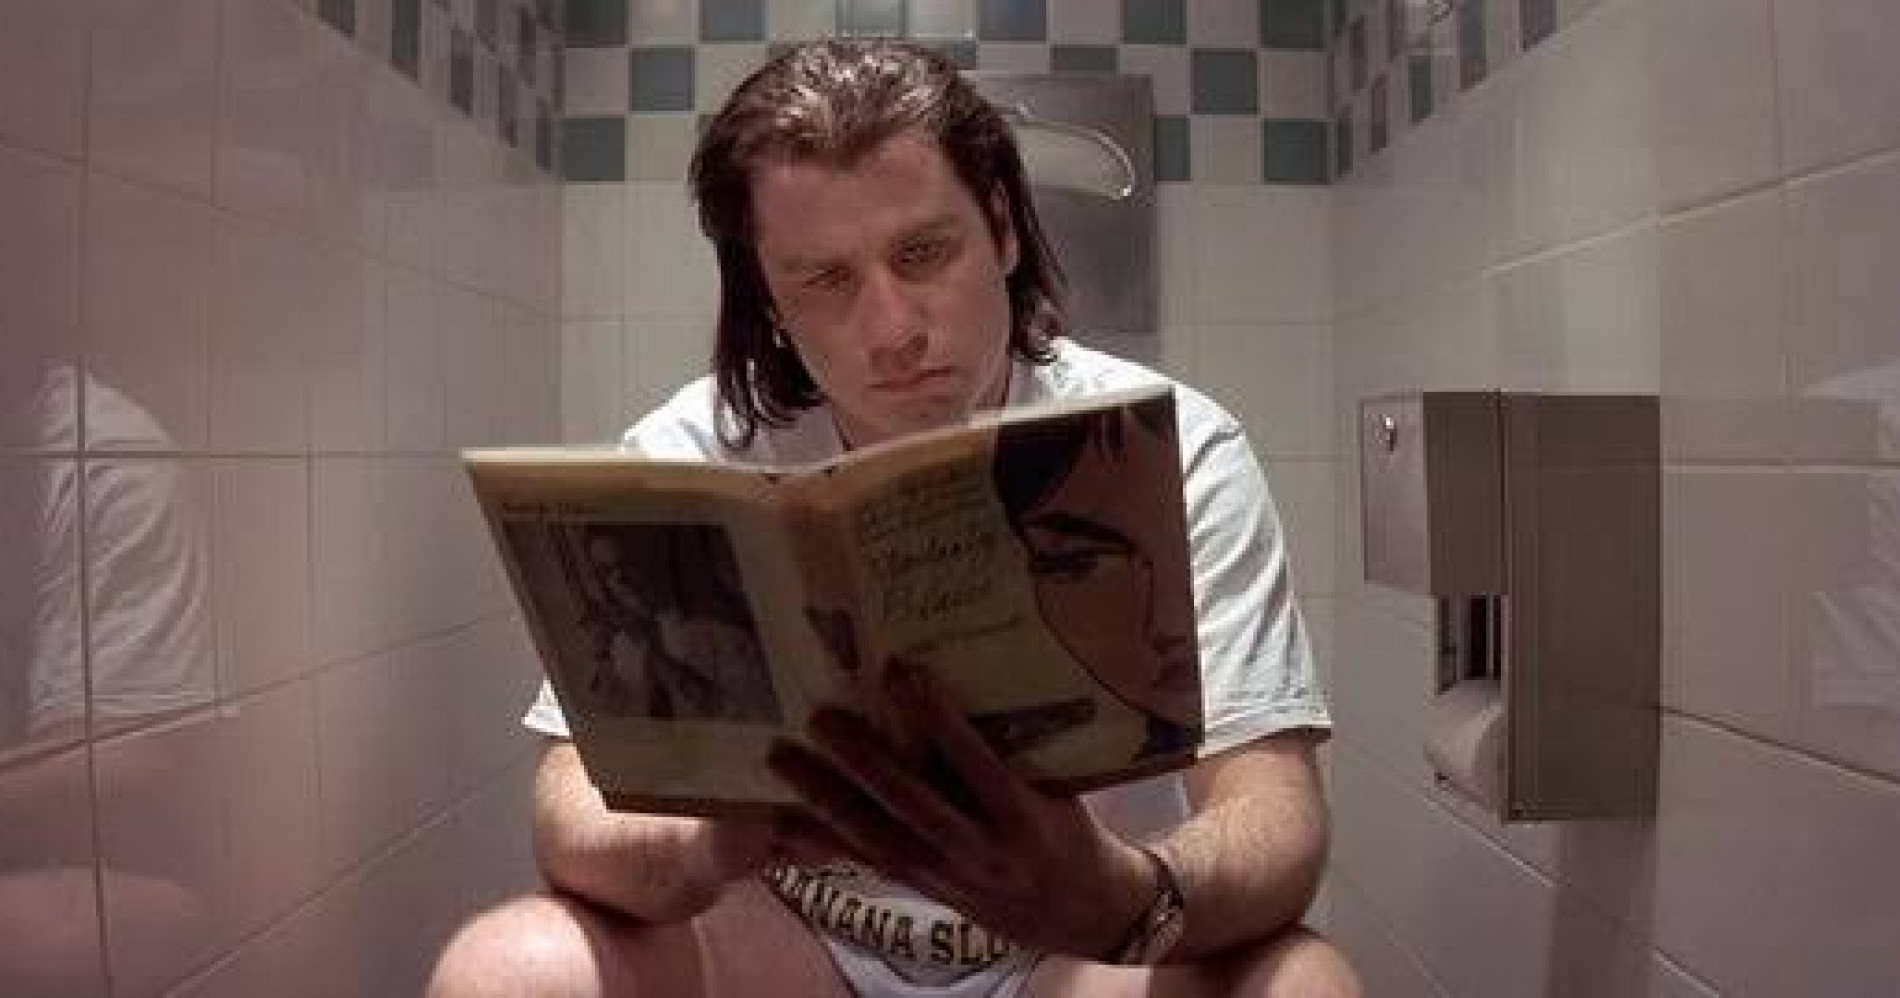 Membaca buku saat di toilet dapat membuat otak rileks (Sumber Gambar: Reddit)